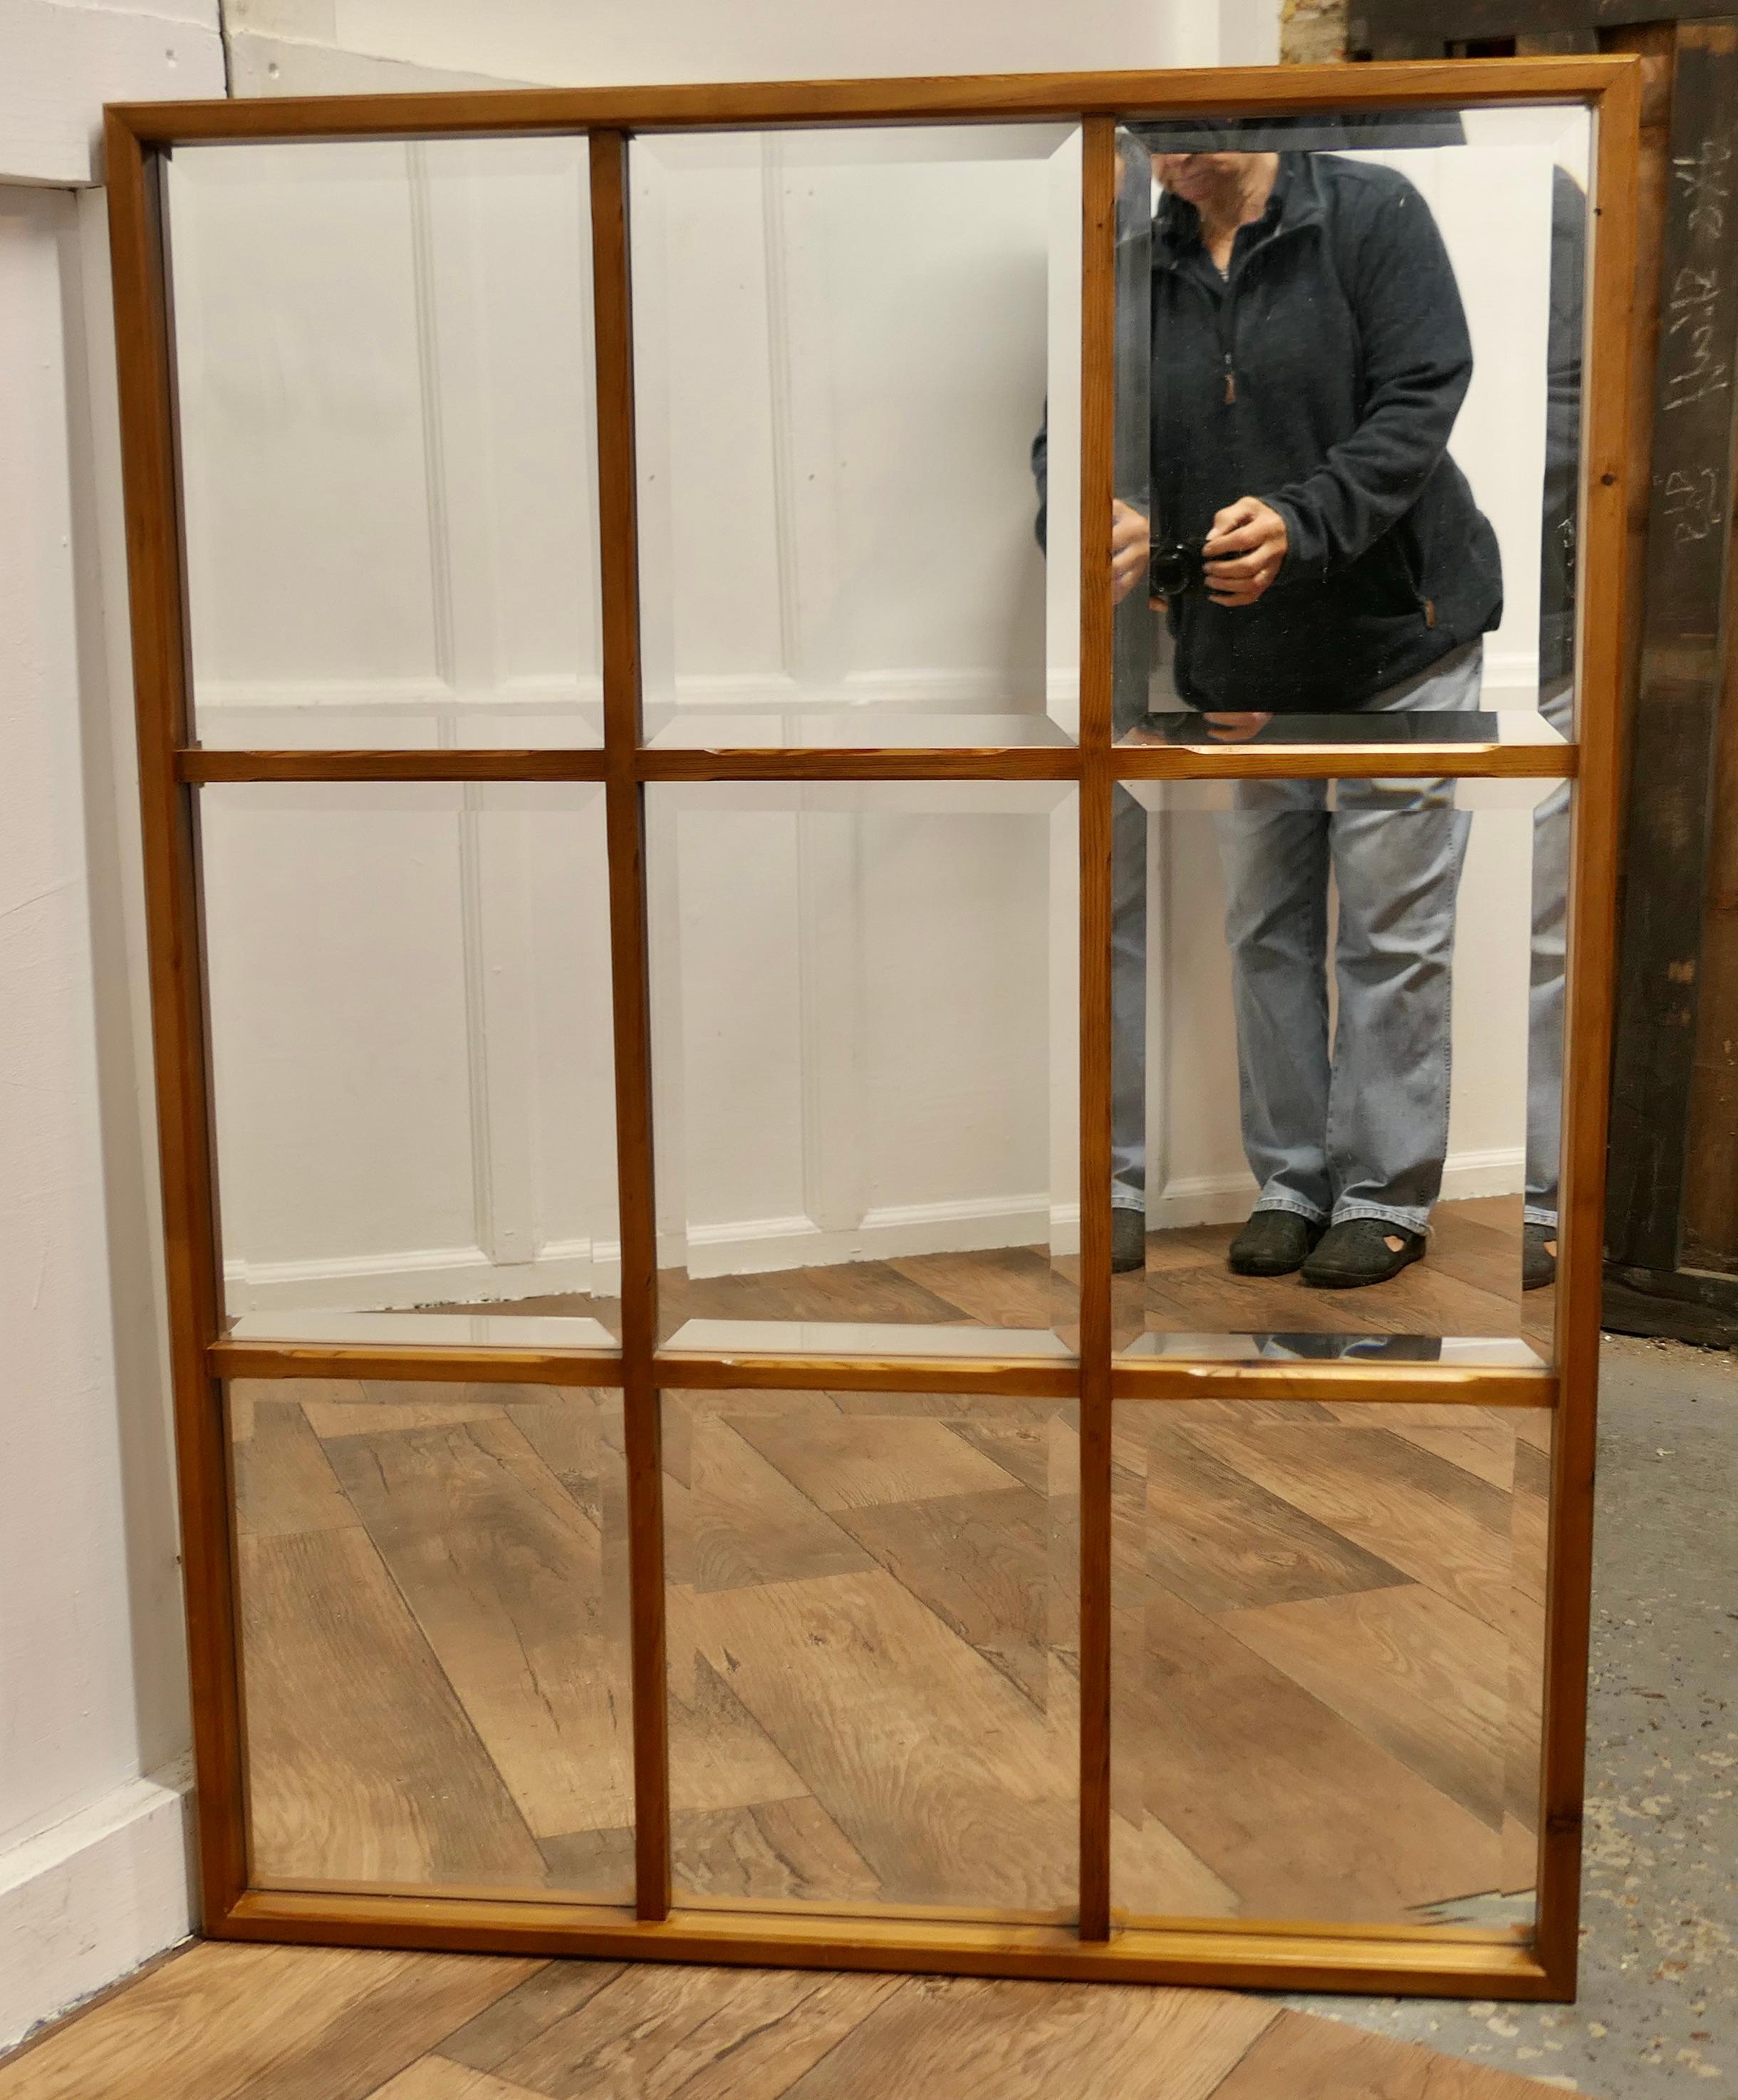 window mirror shelf